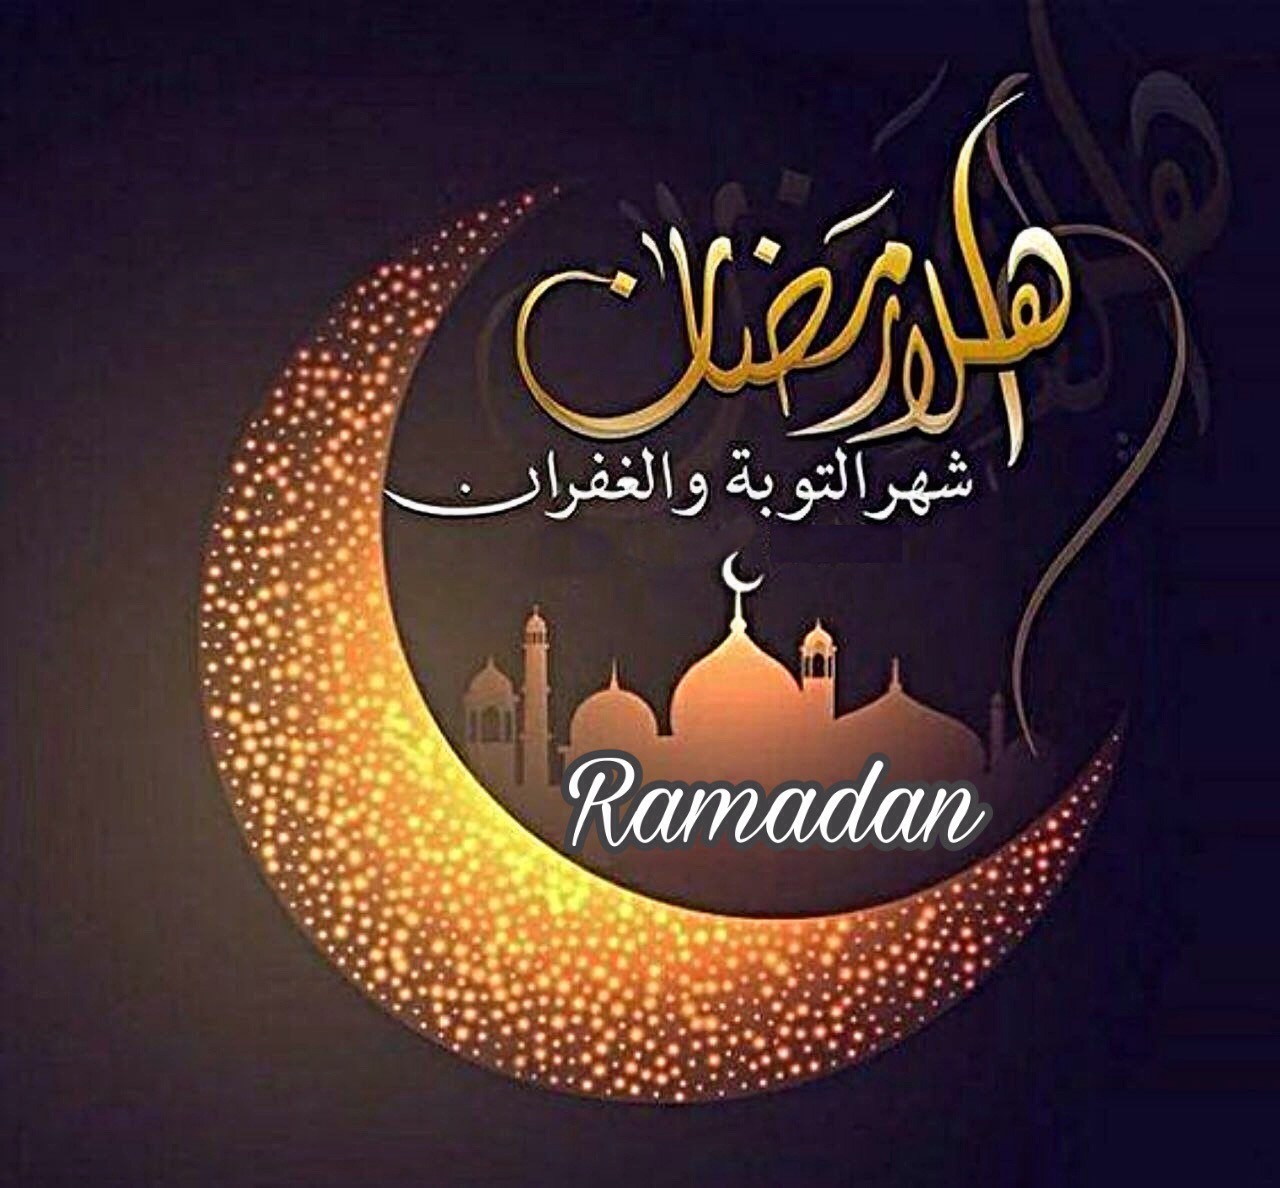 أجمل صور شهر رمضان 2021 خلفيات رمضان 2021 سواح هوست